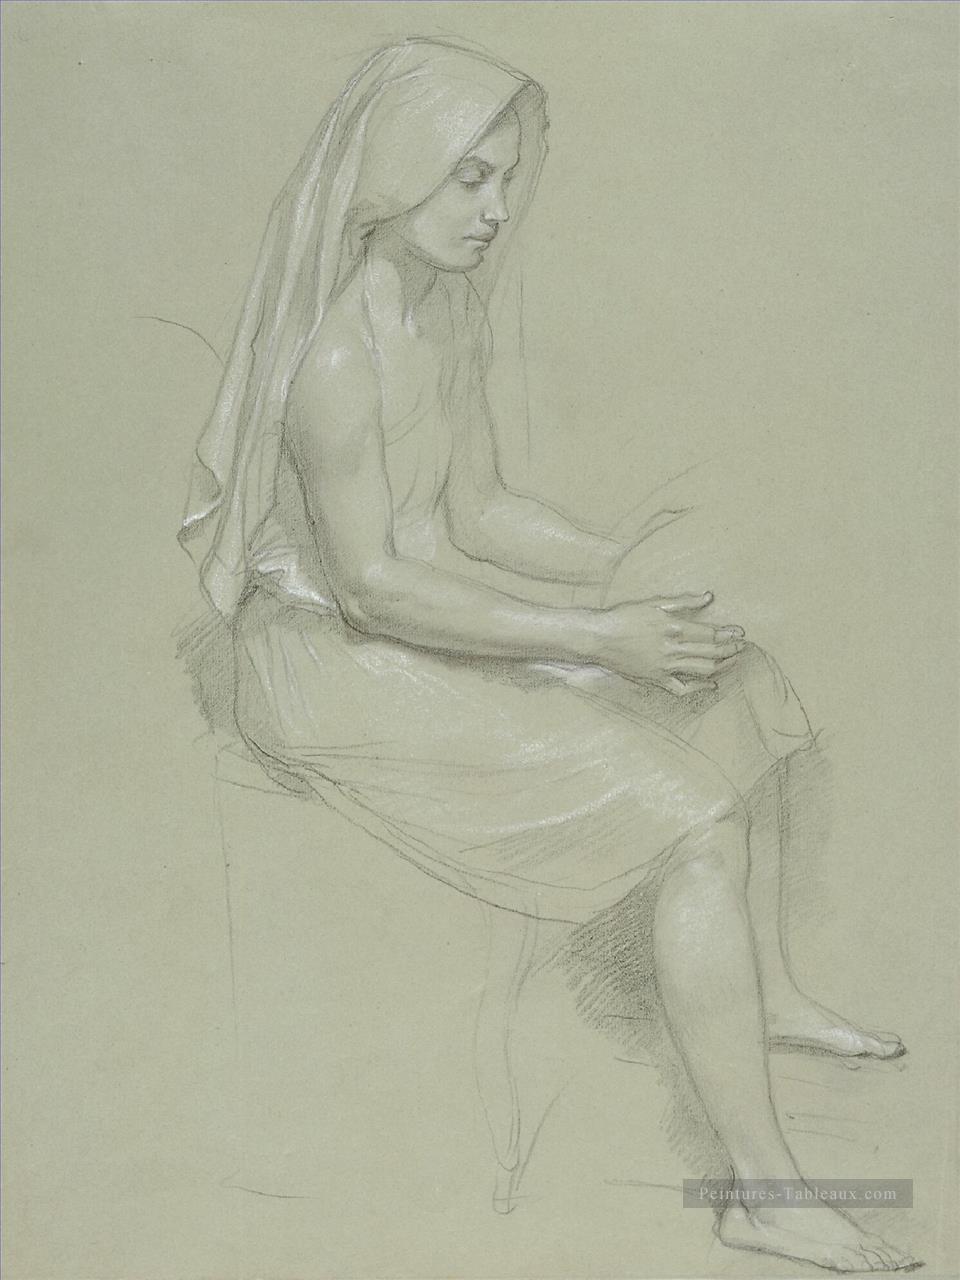 Étude d’une figure féminine voilée assise réalisme William Adolphe Bouguereau Peintures à l'huile